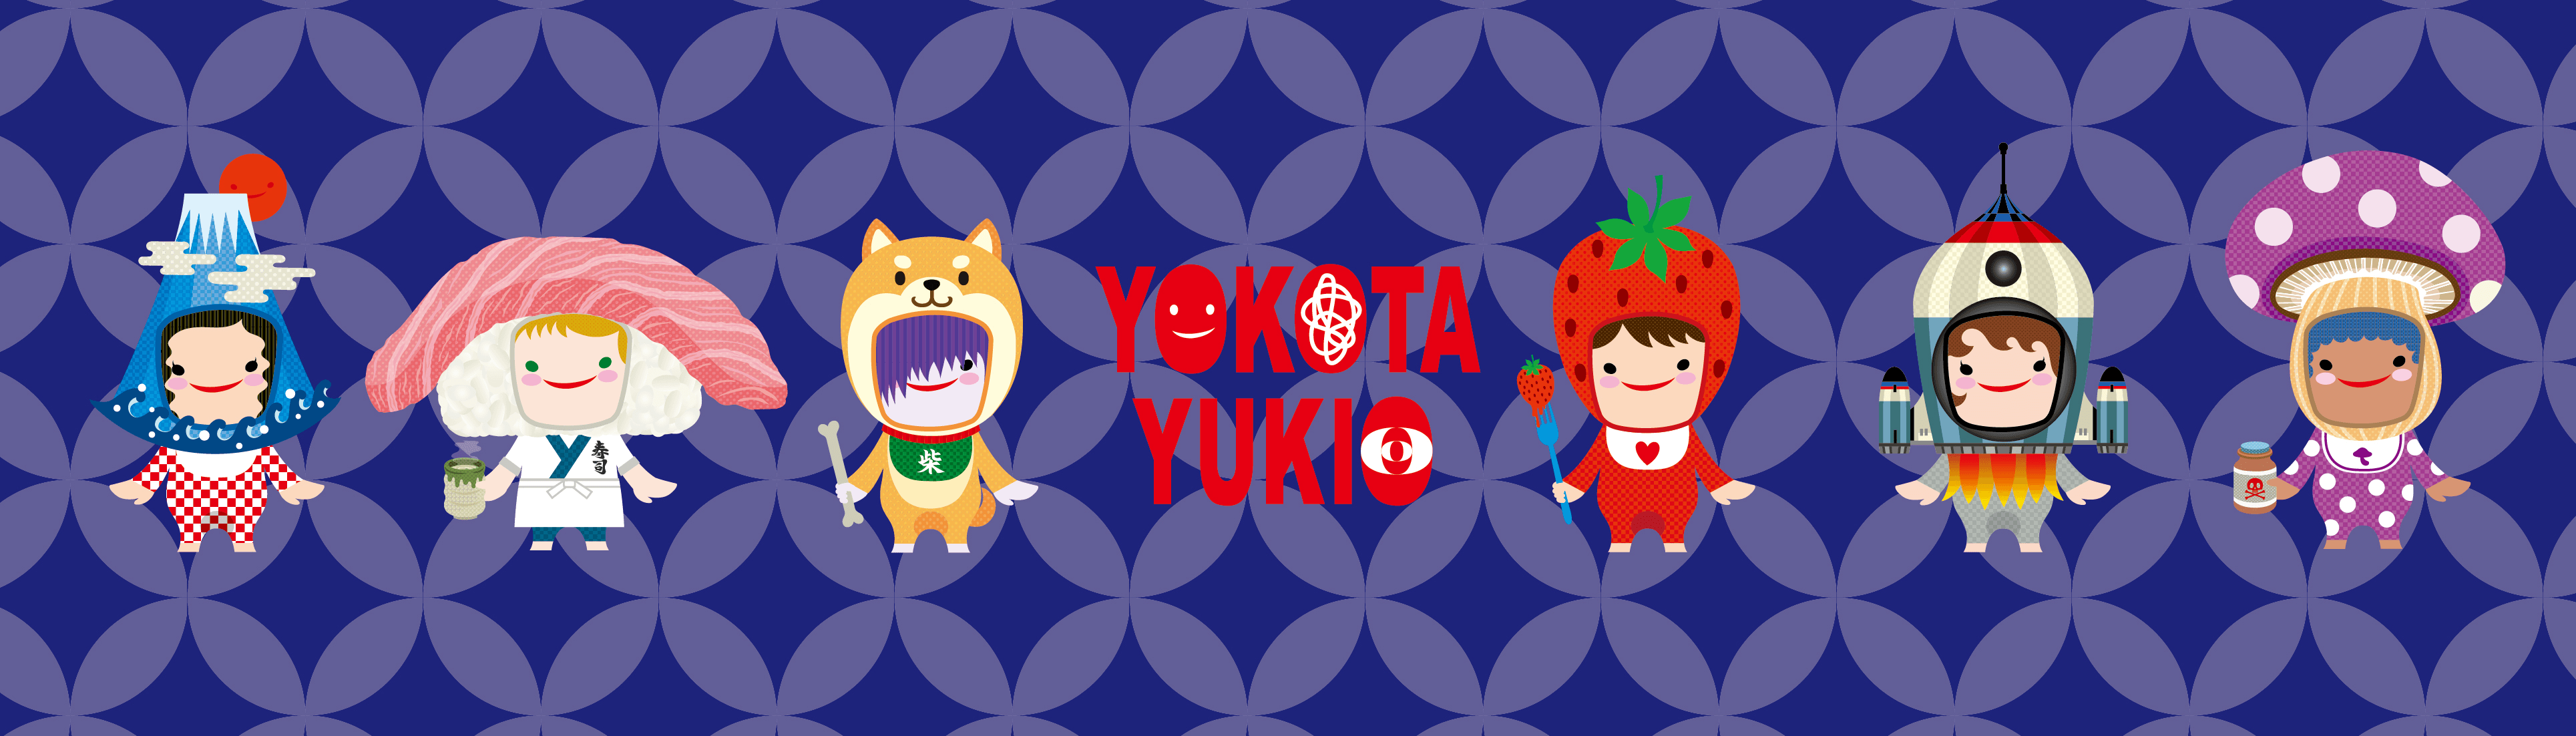 YokotaYukio banner